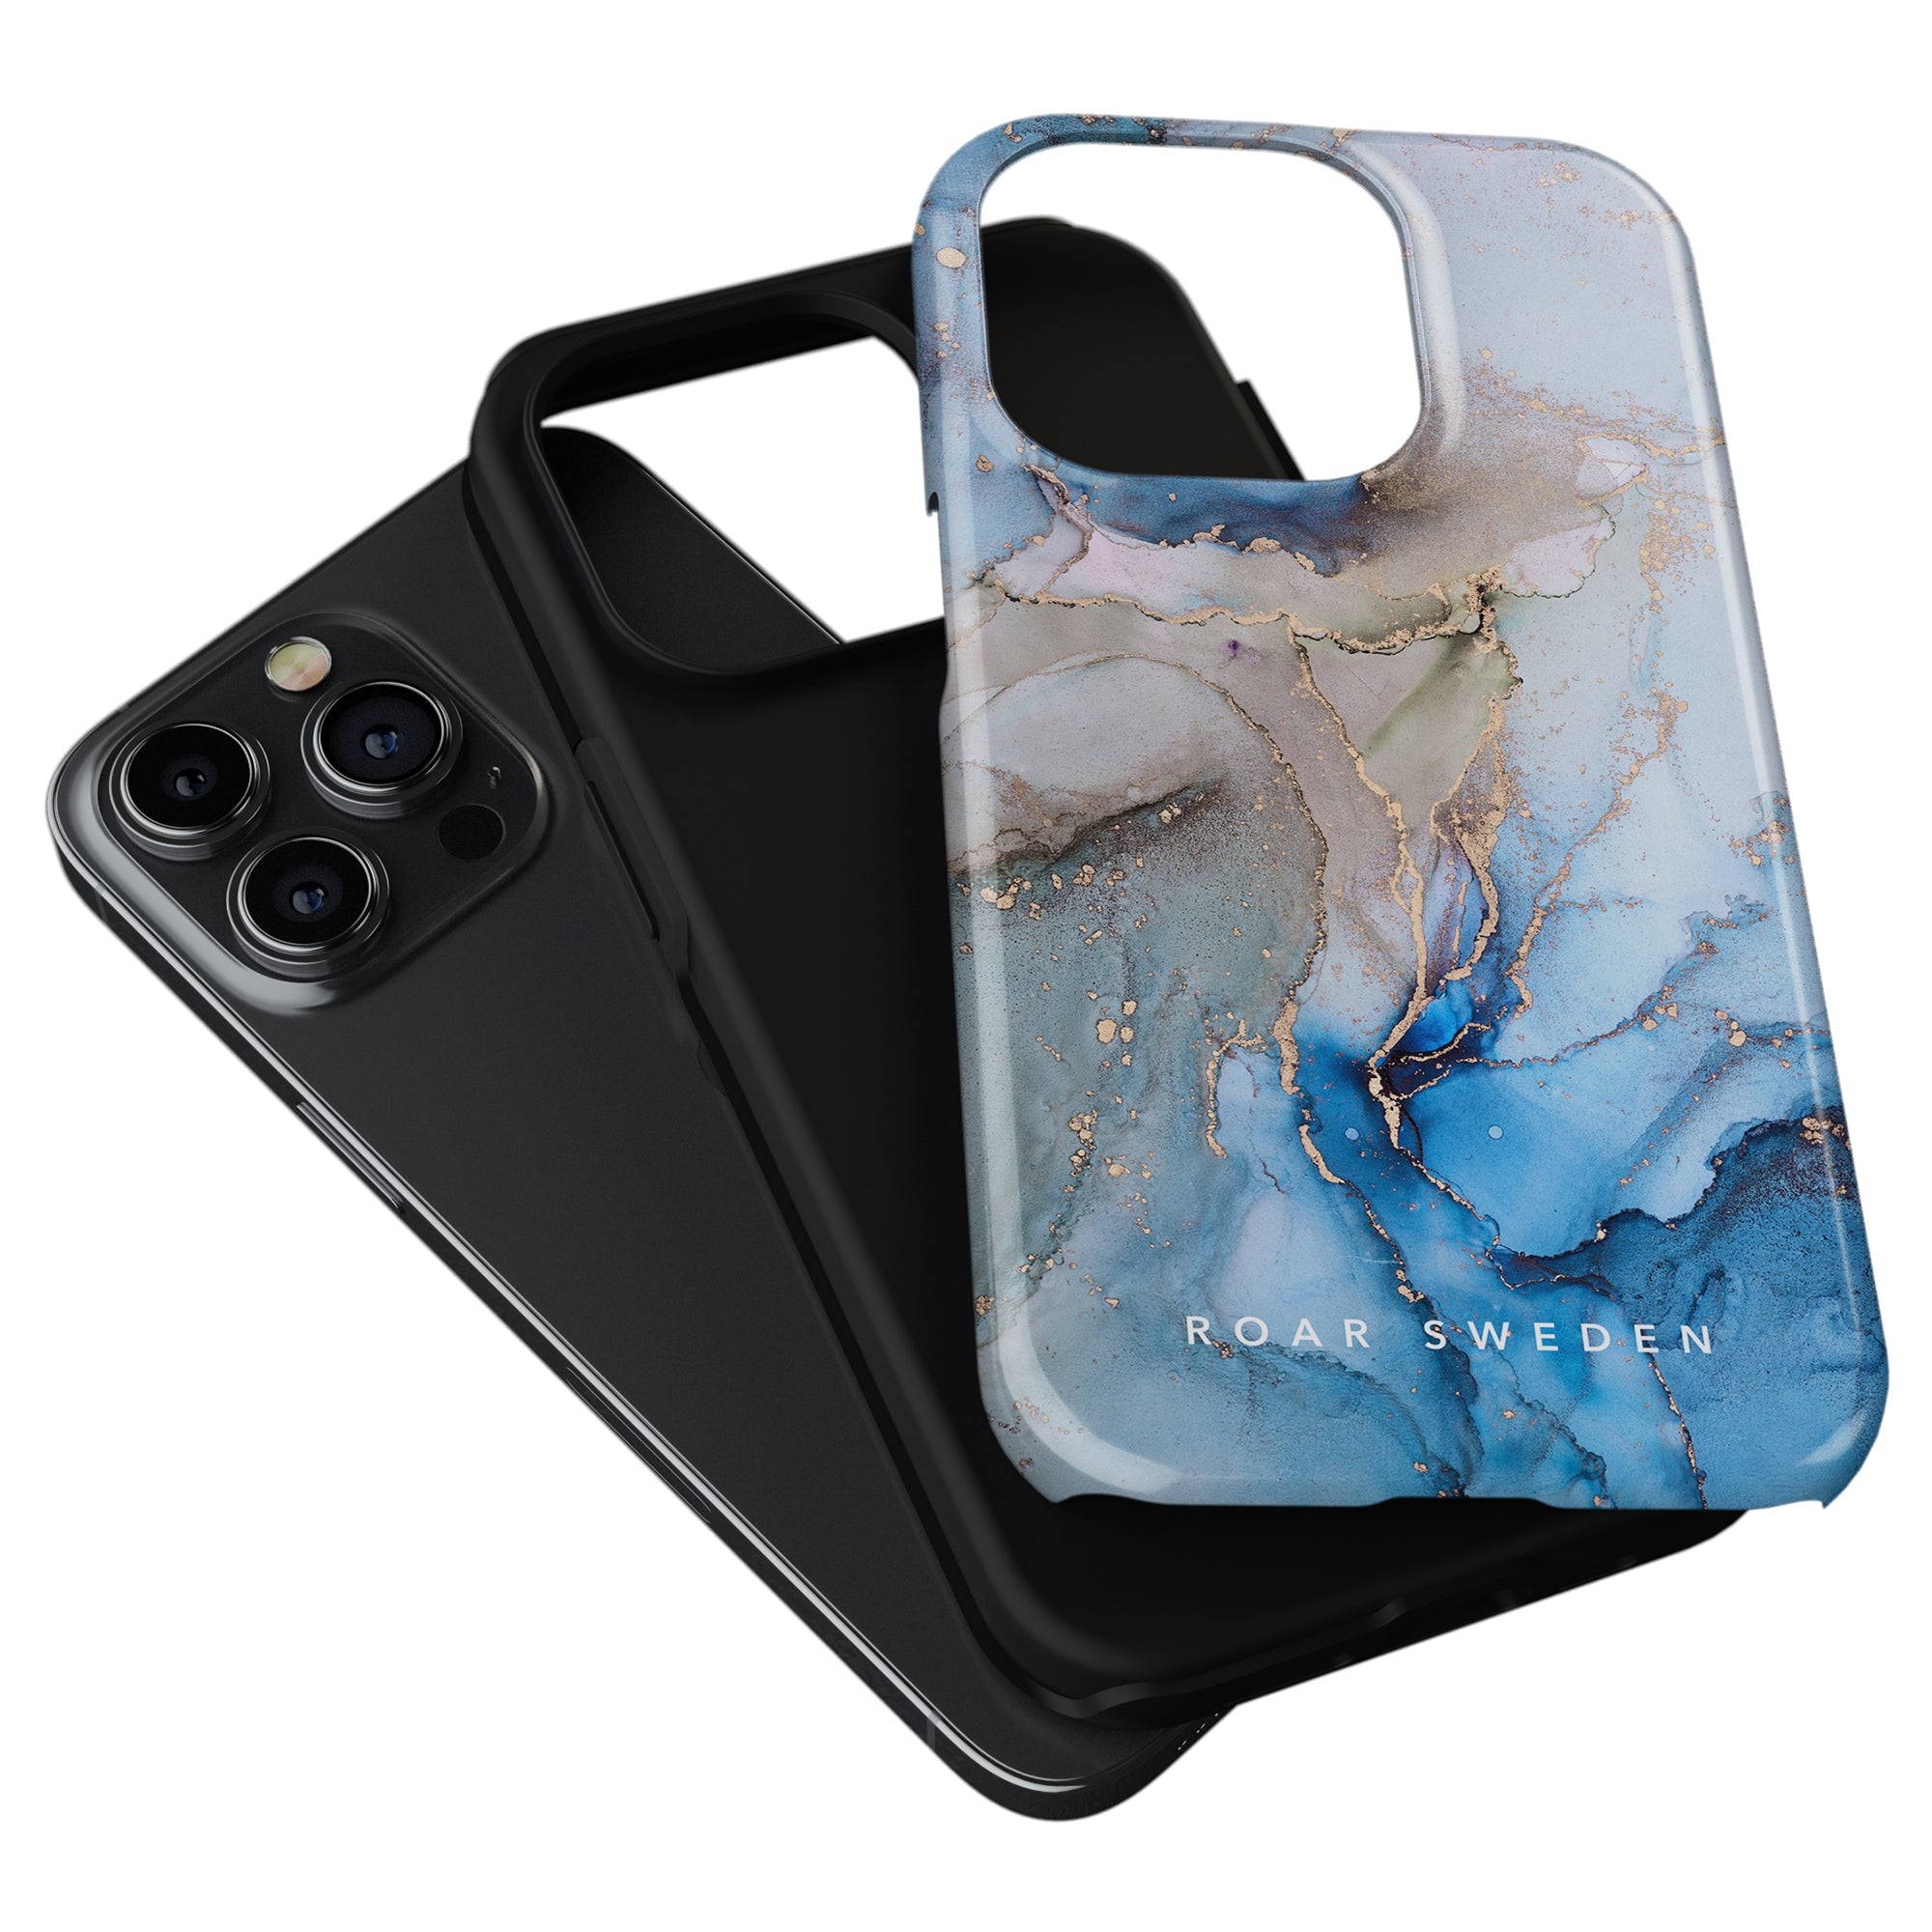 Förvandla din iPhone 11 Pro till en konstnärlig skapelse med Waves - Tough Case. Detta blå marmorfodral är tillverkat av högkvalitativt TPU-material, vilket ger ett robust grepp och.